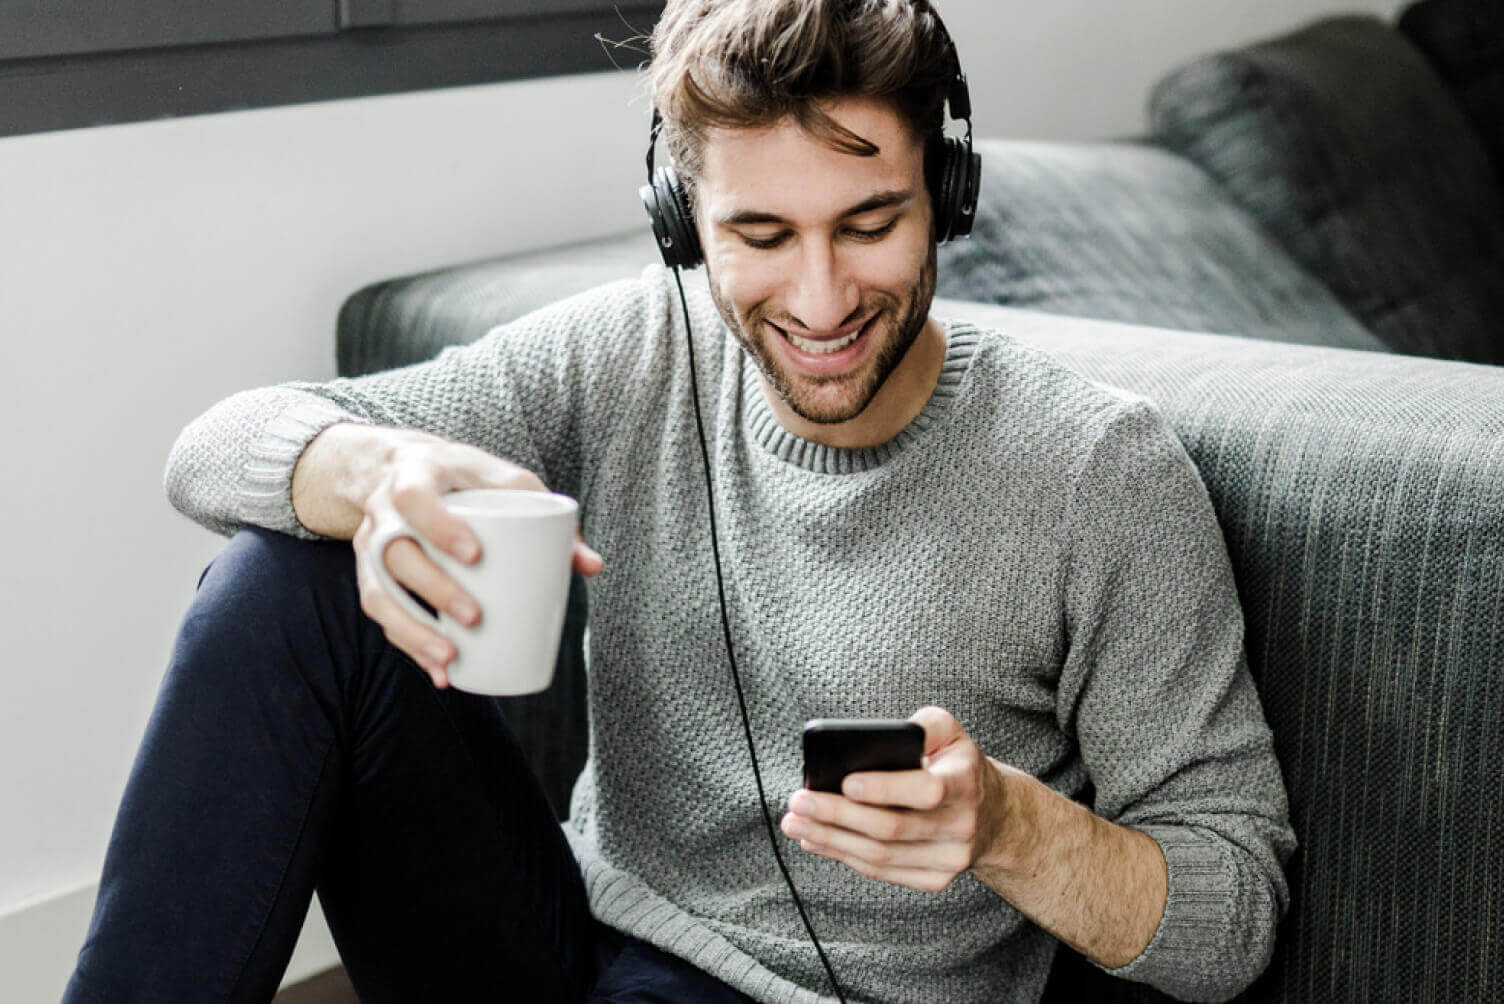 Hombre sonriendo con un café en la mano, escuchando música y viendo el celular